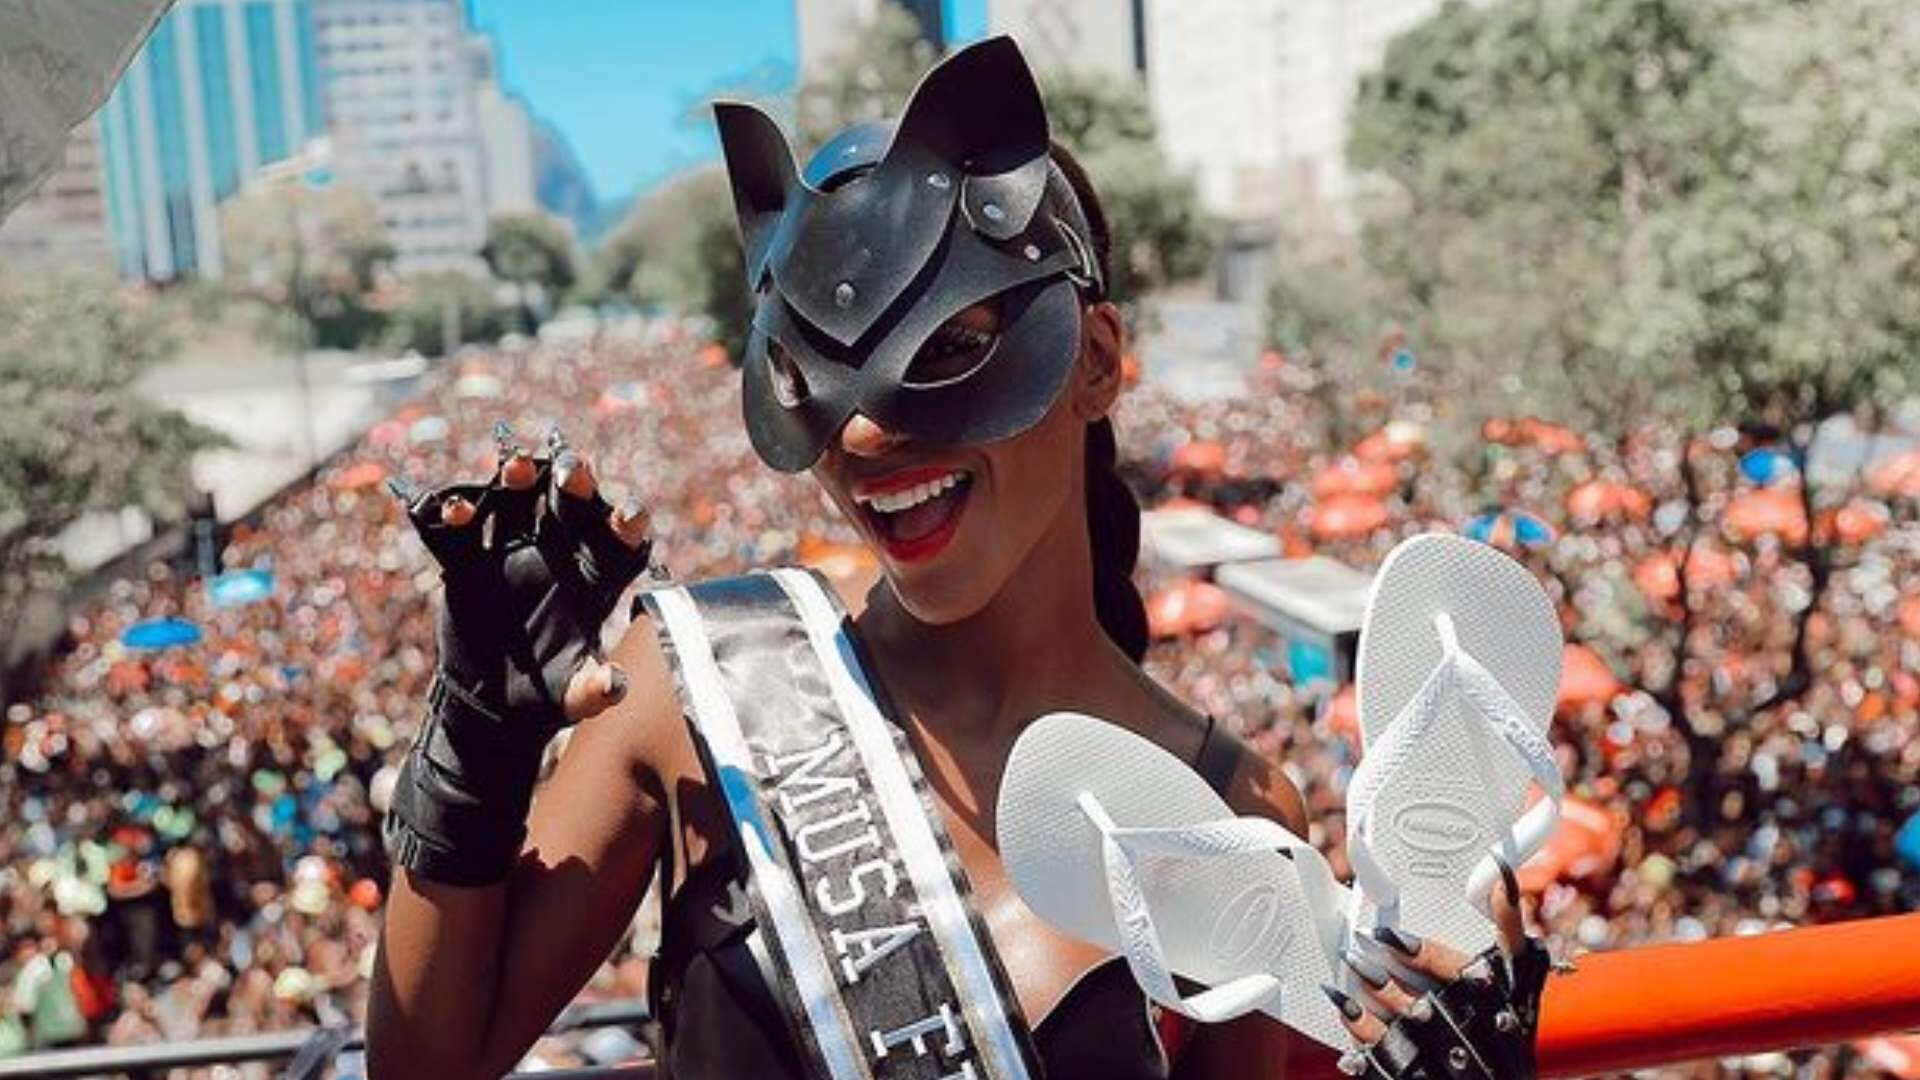 Brunna Gonçalves ‘se lambe’ no Carnaval com roupa minúscula e volume bronzeado impressiona - Metropolitana FM